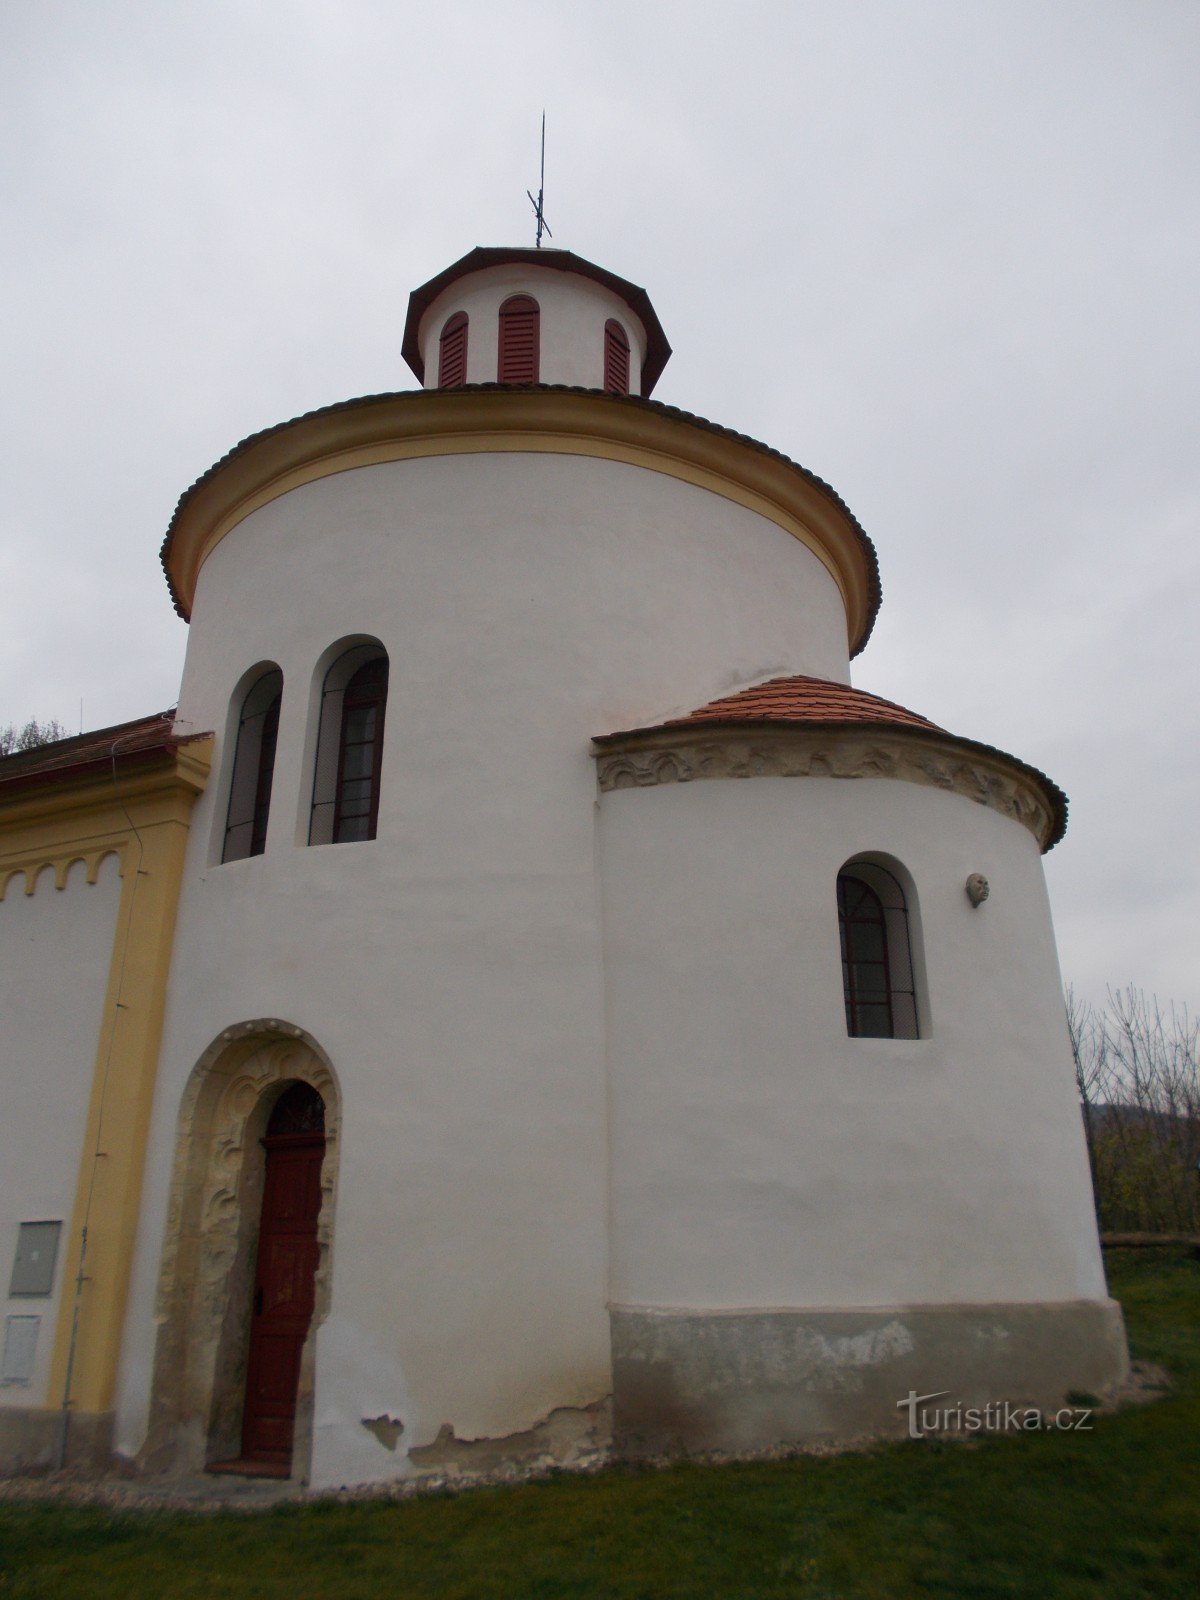 St Peter och Paulus kyrka i Želkovice.